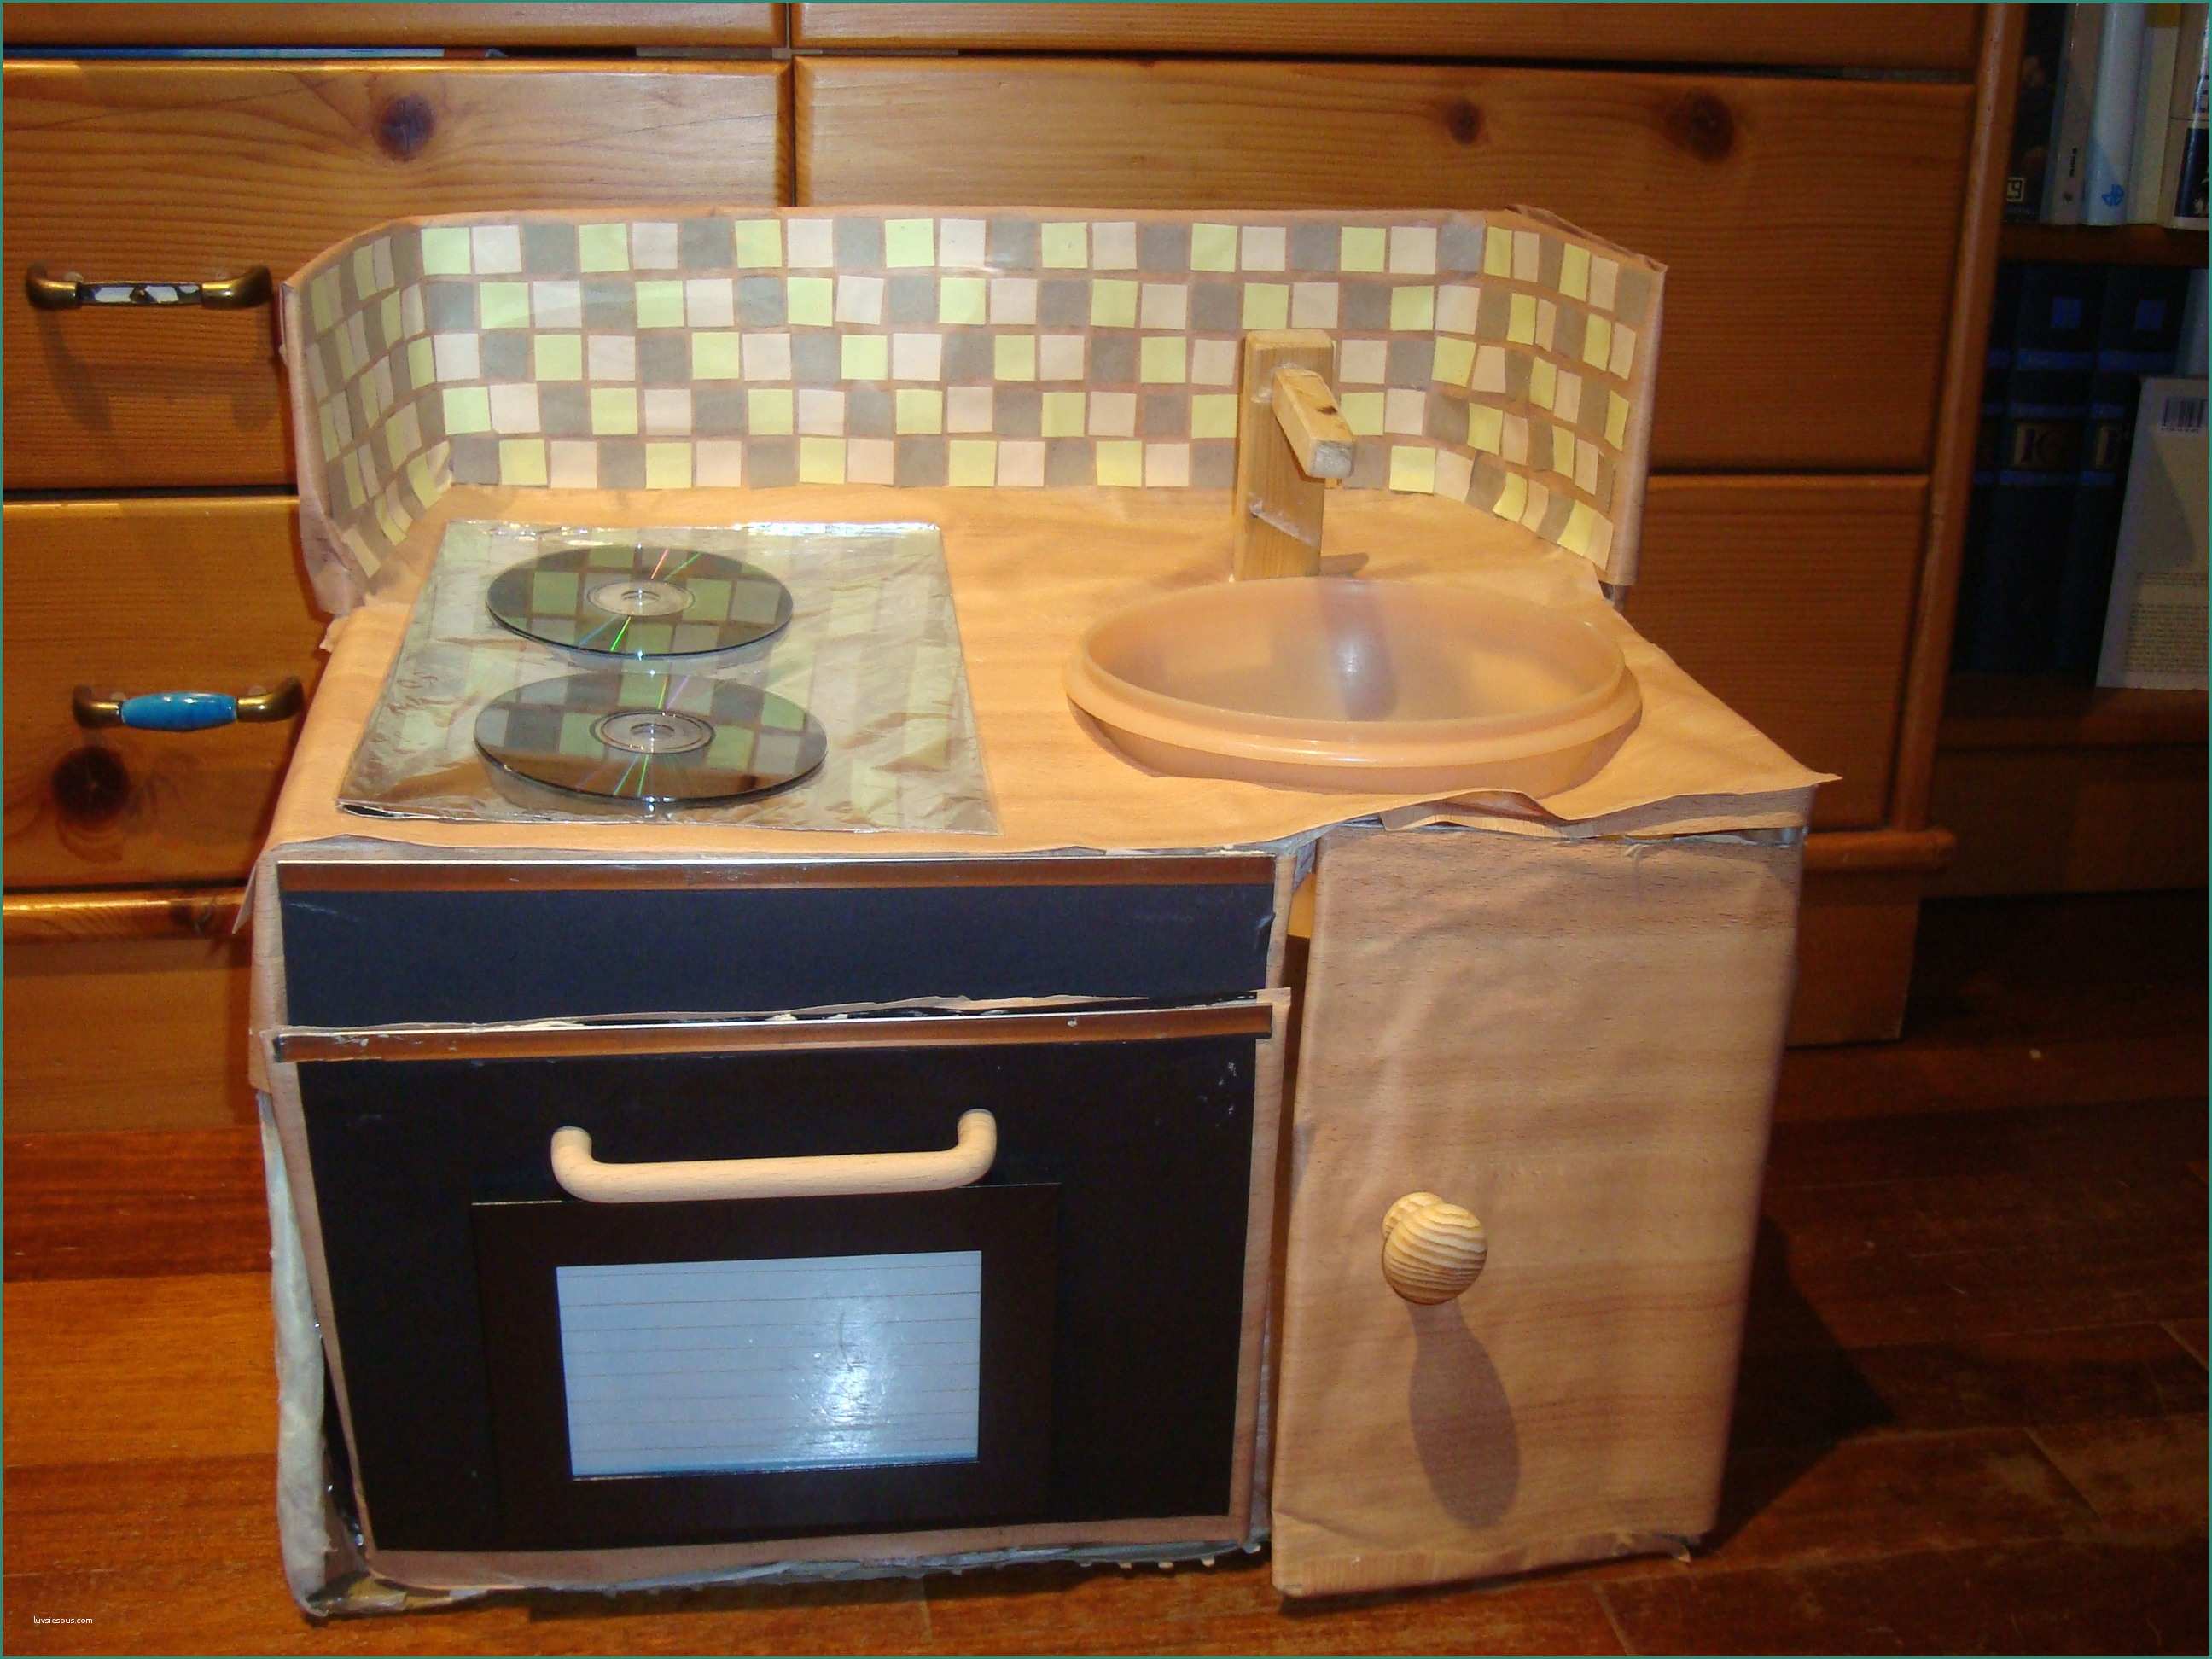 Progettare Una Cucina In Muratura E Costruire Mobili Cucina Finest Cucina In Muratura with Costruire